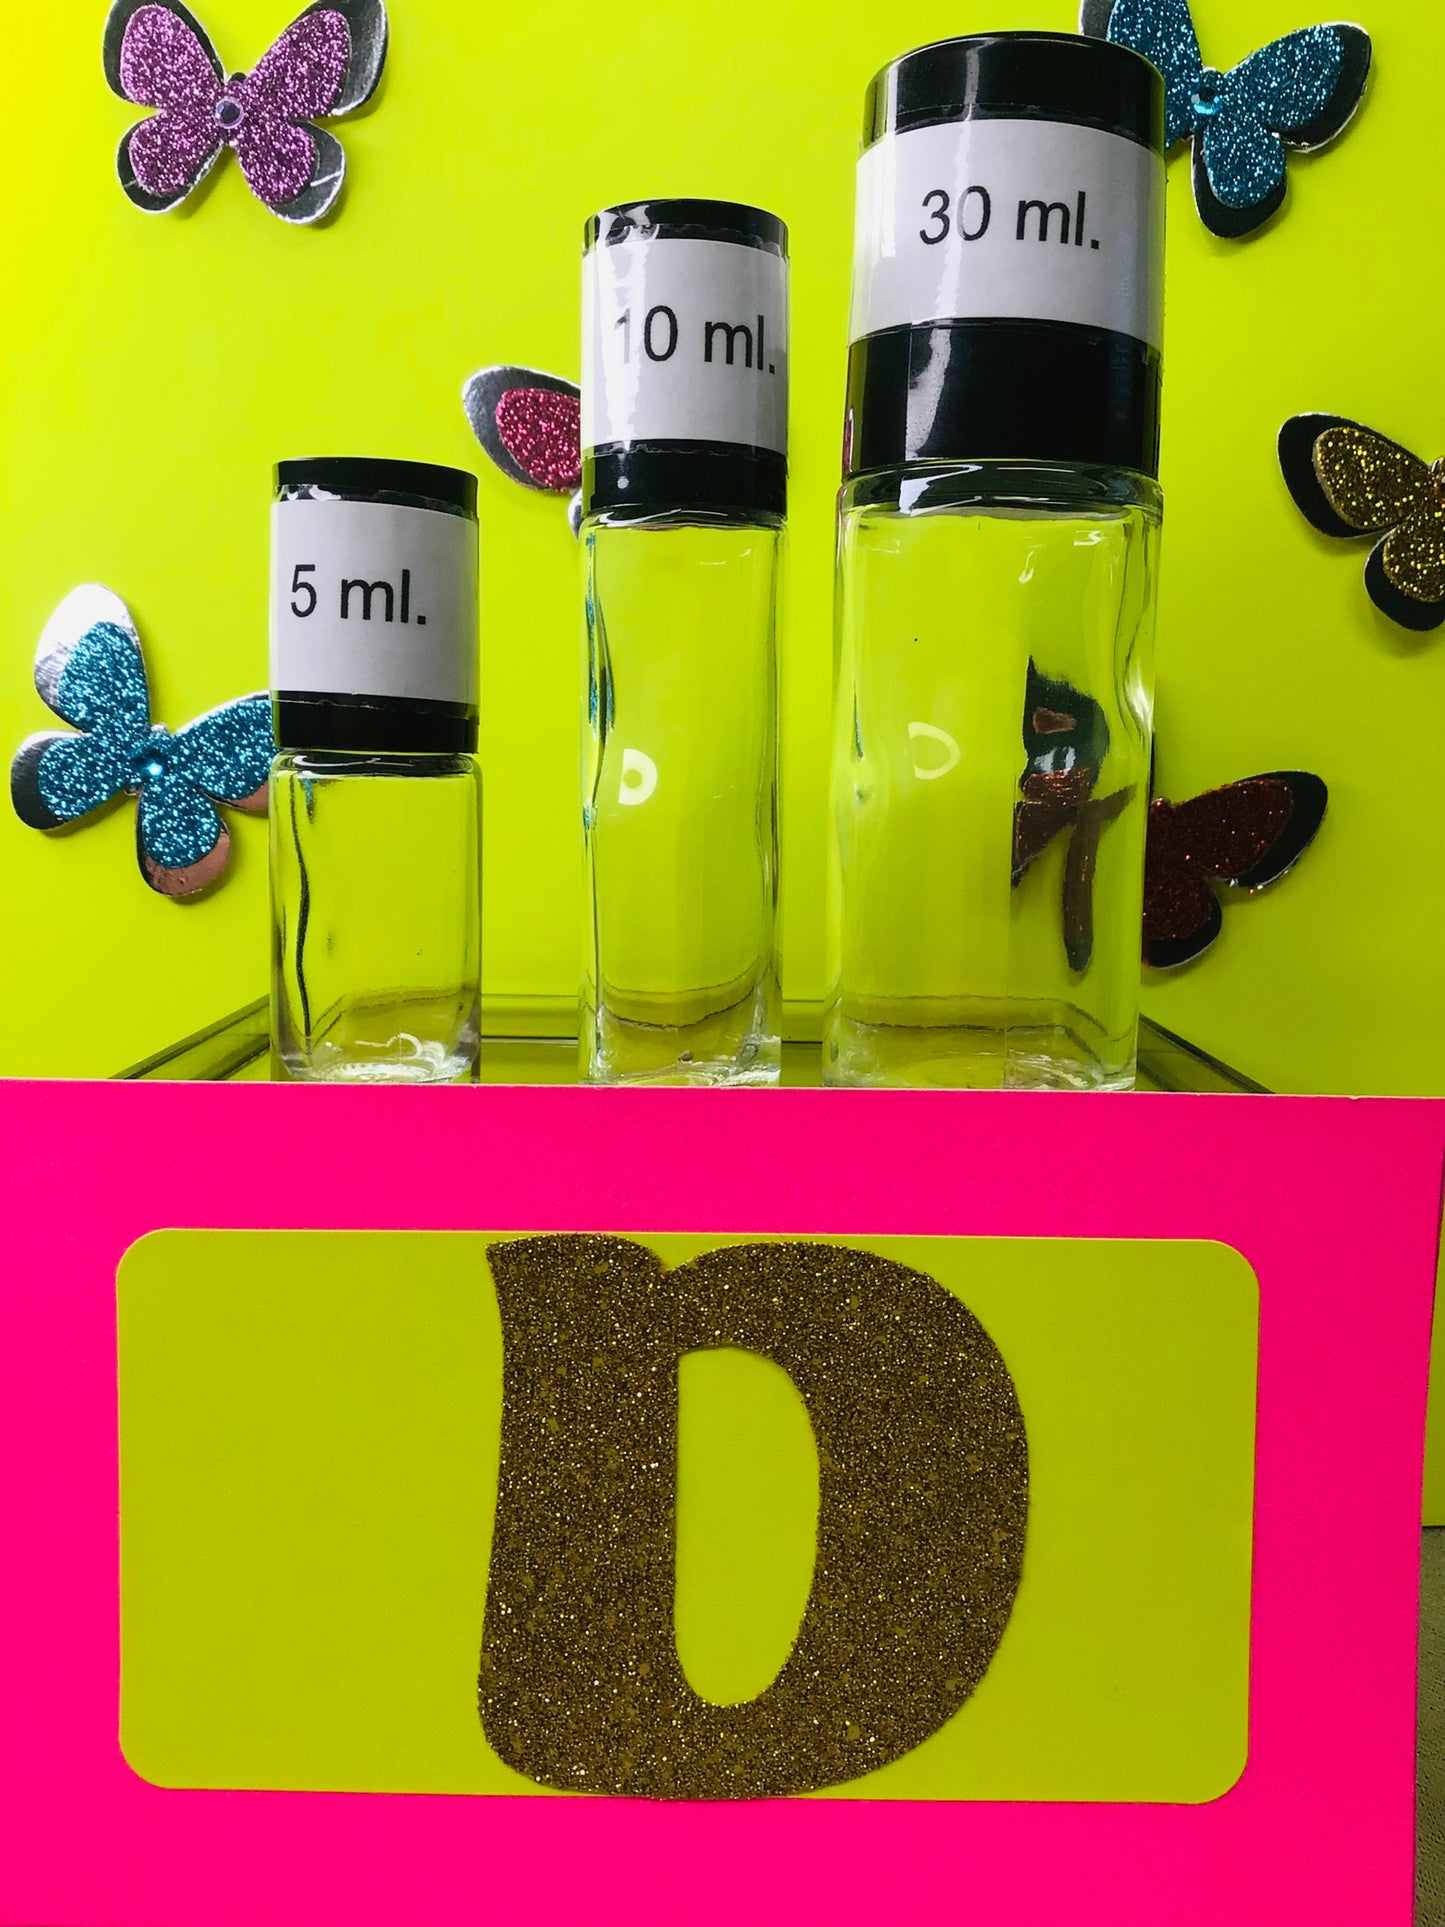 Perfume Oils, "D", Best Selling, Premium Body Oils, Best Fragrances, Handmade